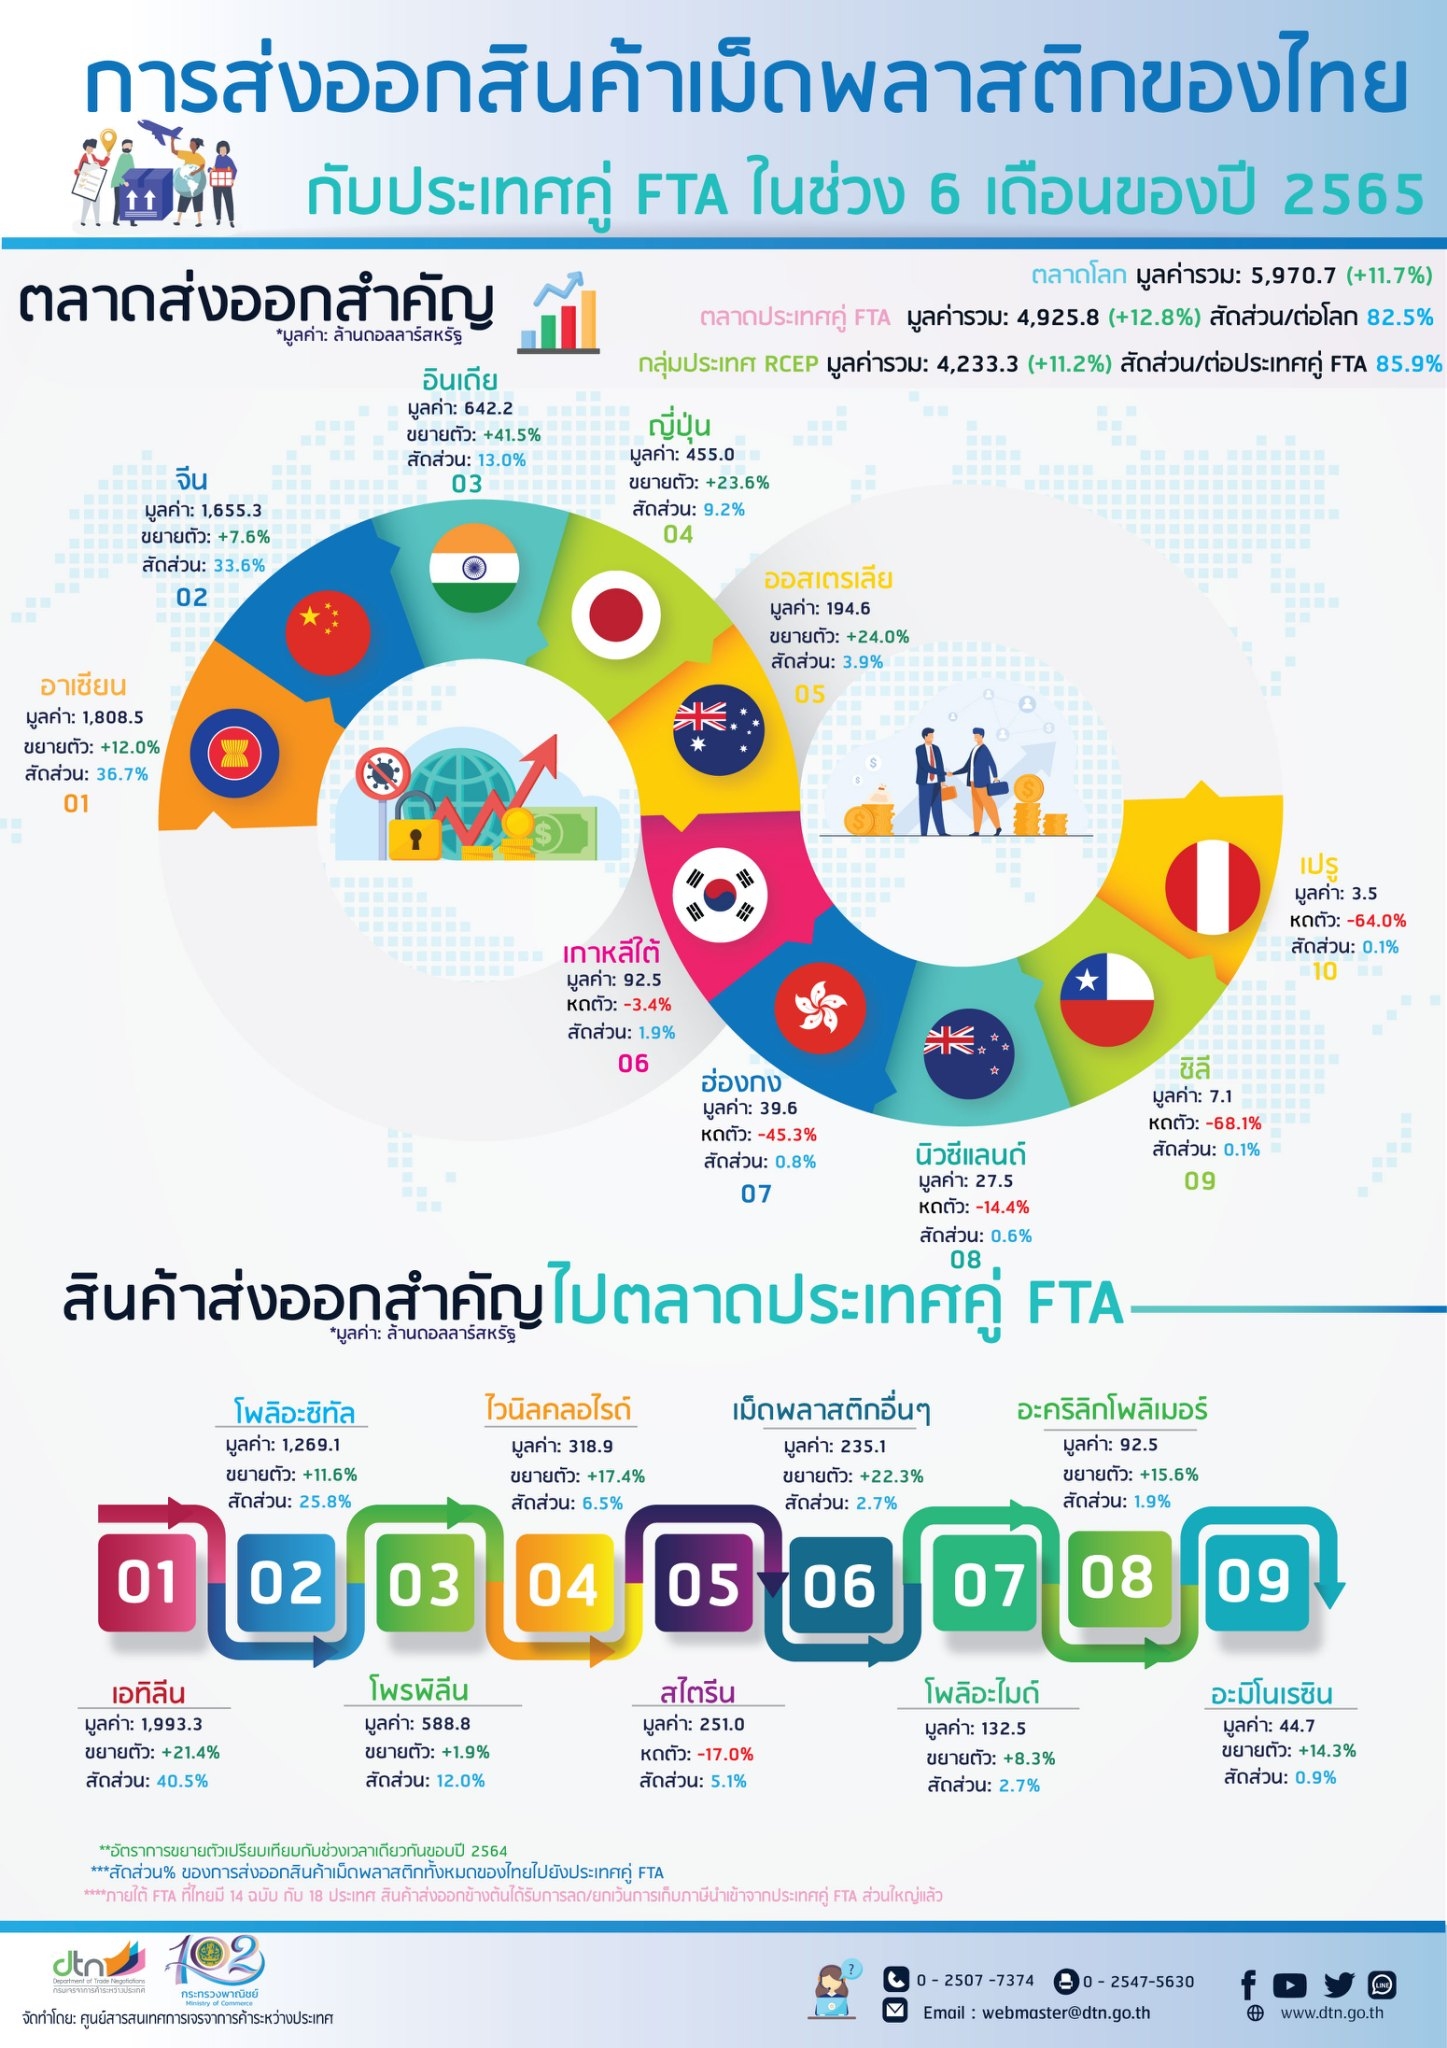 การส่งออกสินค้าเม็ดพลาสติกของไทยกับประเทศคู่ FTA ในช่วง 6 เดือนของปี 2565